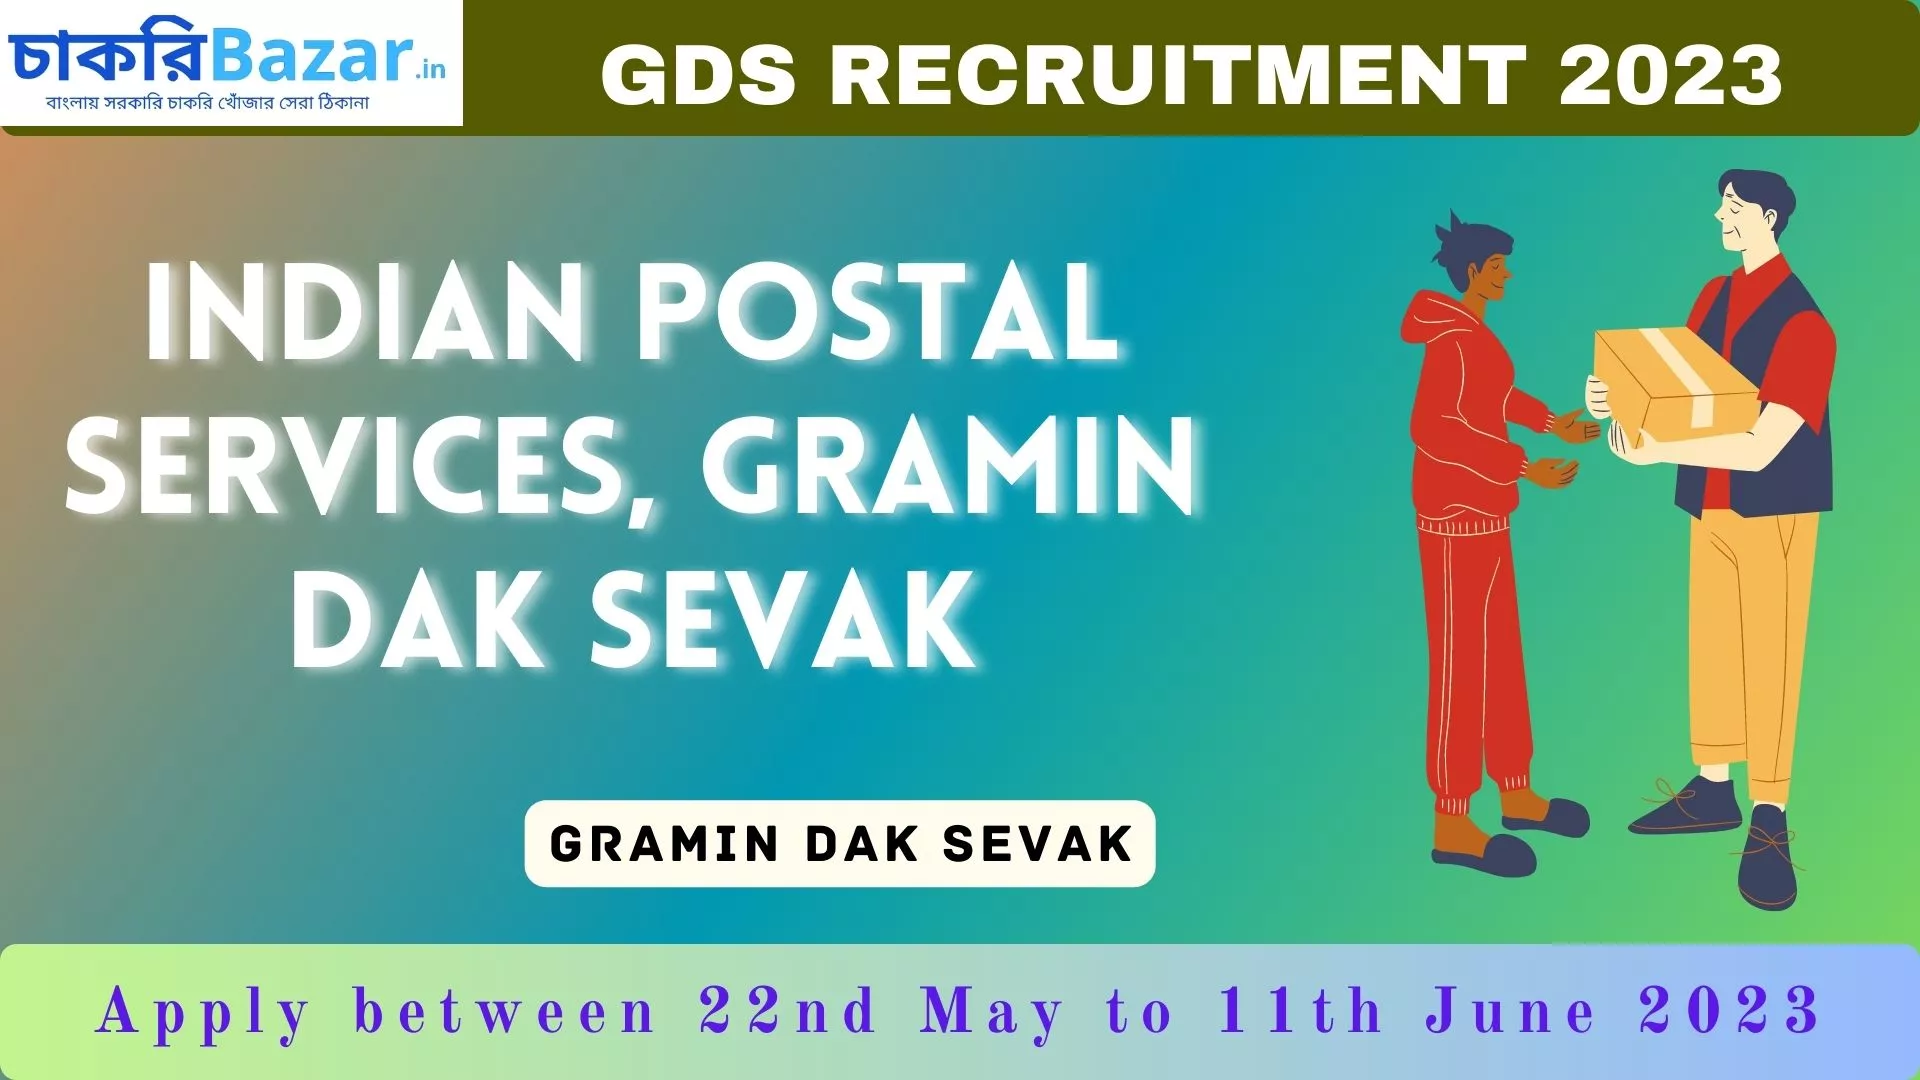 GDS Recruitment Job news 2023